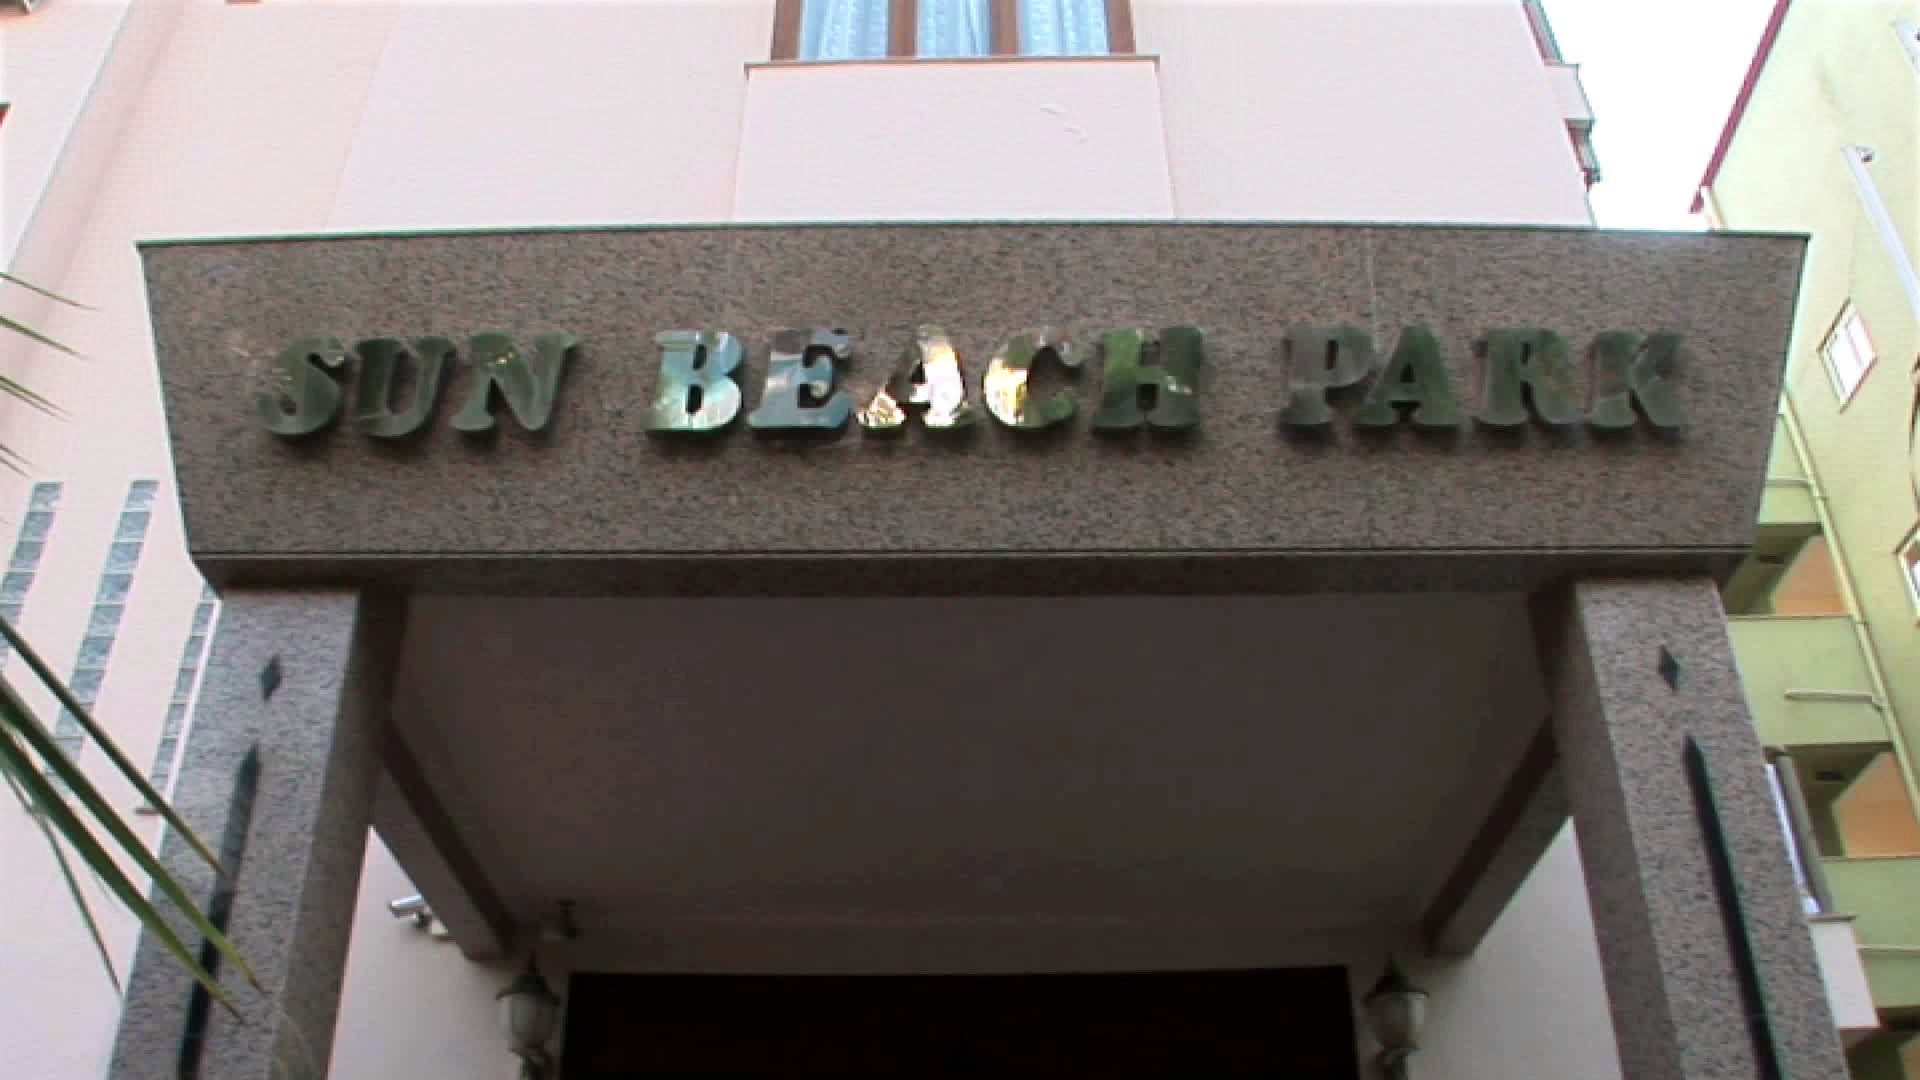 Sun Beach Park